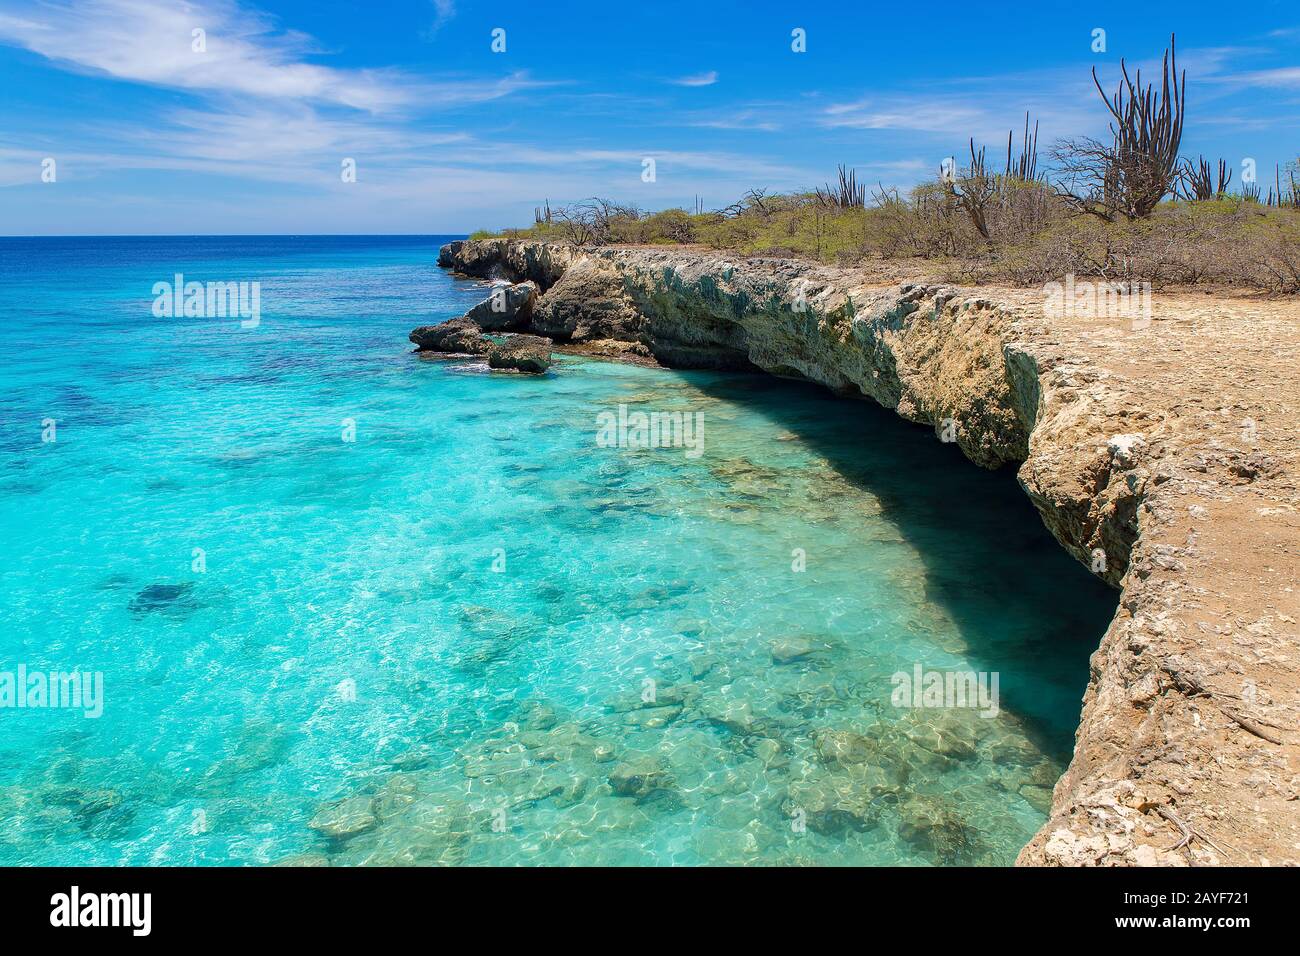 Costa rocciosa con acque poco profonde in mare blu Foto Stock